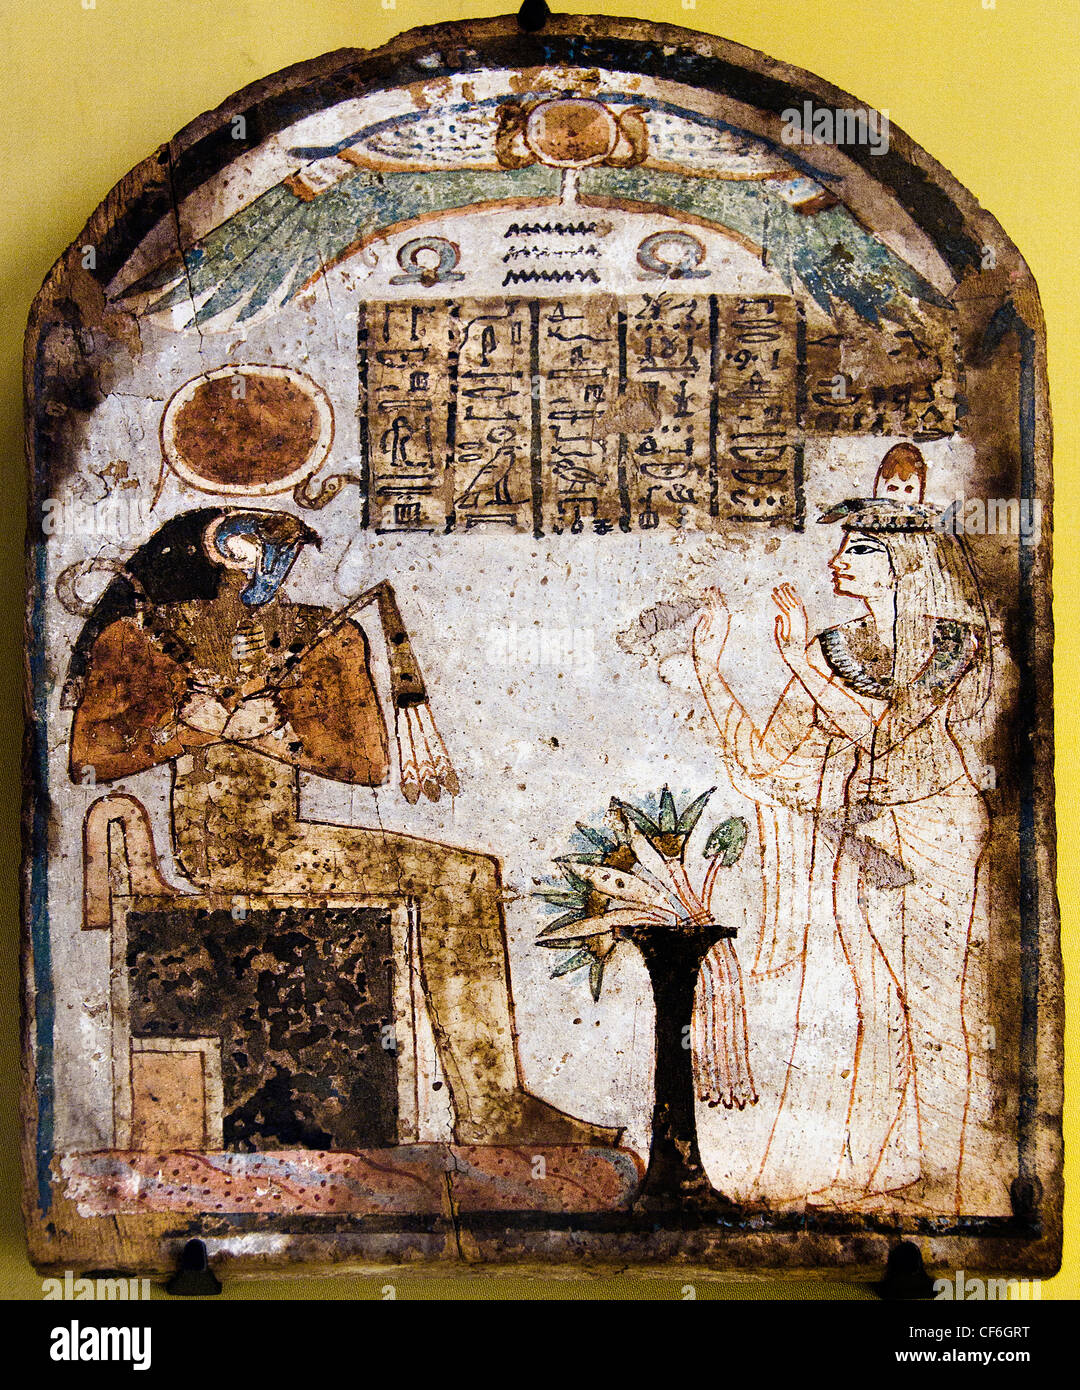 La señorita Tachémès rezar al dios Re Harakhti a 900 BC 22ª dinastía Egipto jeroglífico egipcio de pintura Foto de stock